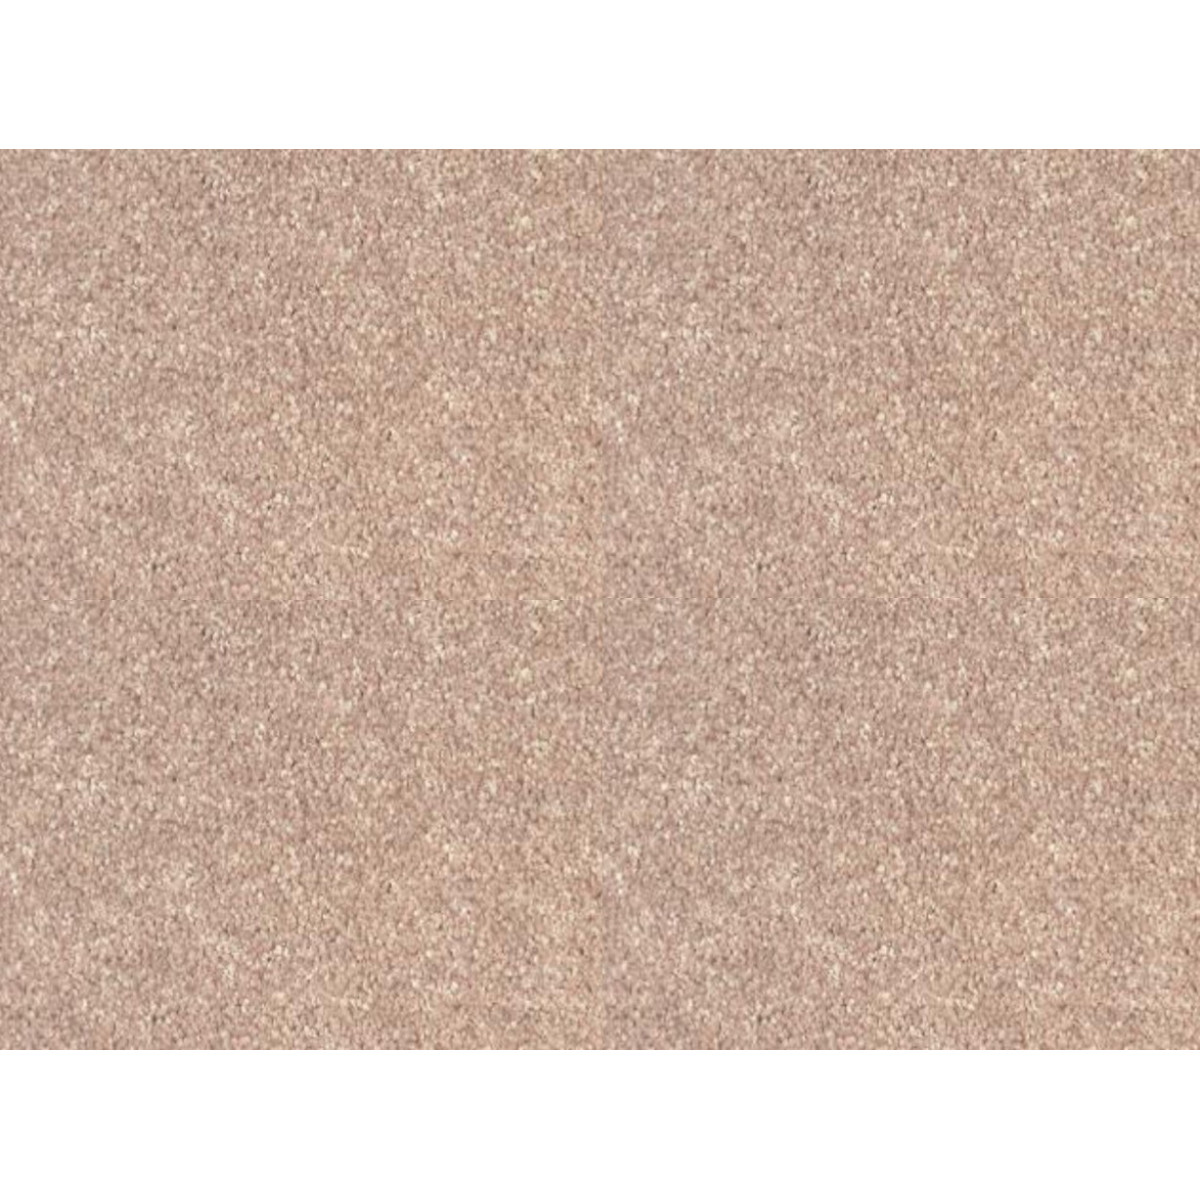 AKCE: 125x630 cm Metrážový koberec Tagil / 82131 sytě béžový